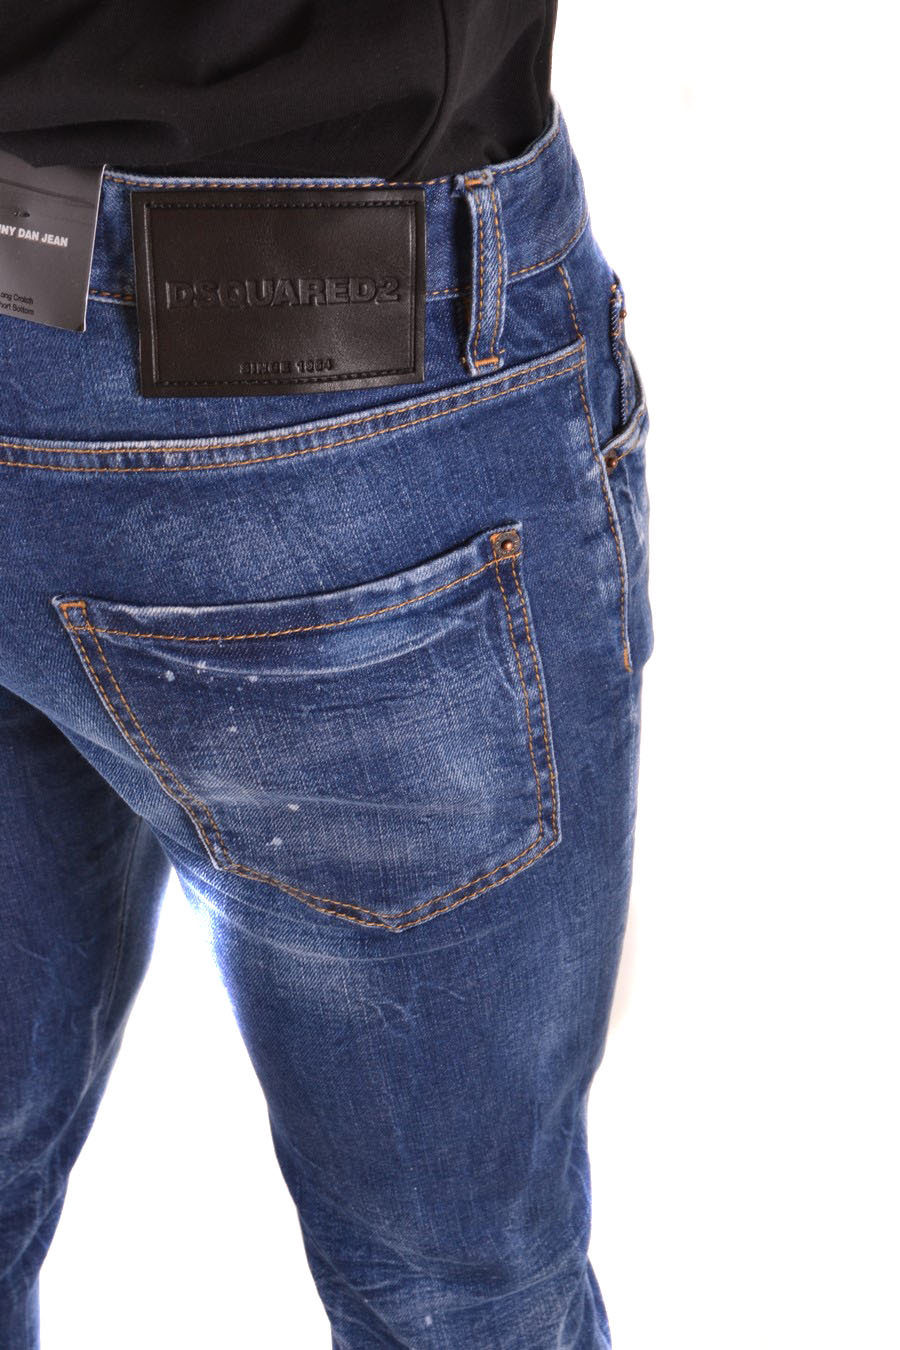 DSQUARED2: Jeans para hombre, Denim  Jeans Dsquared2 S71LB1323S30309 en  línea en